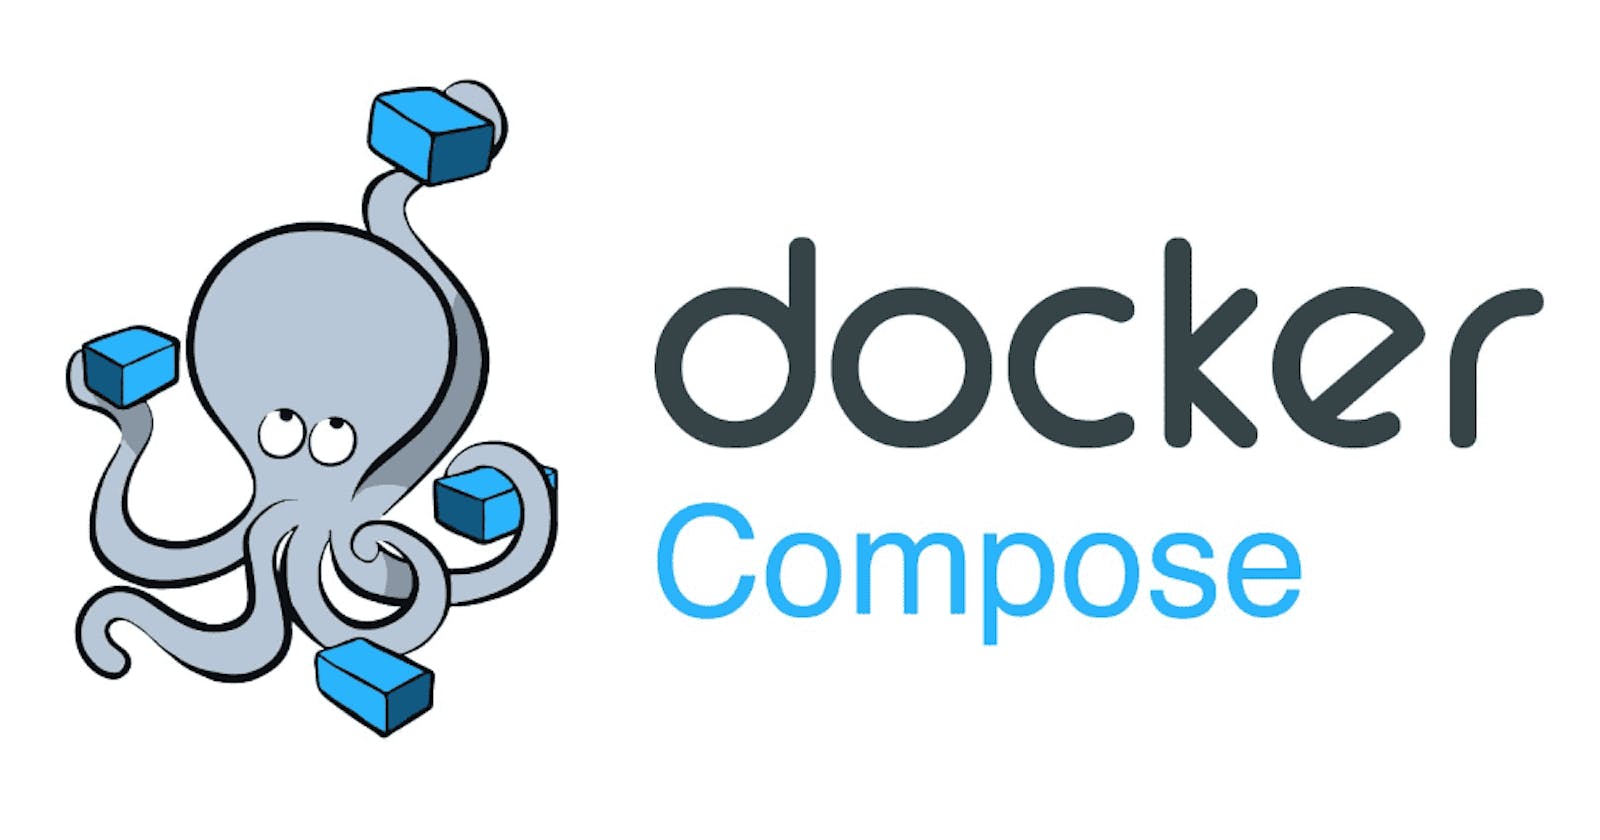 Day 18 - Docker Compose for DevOps